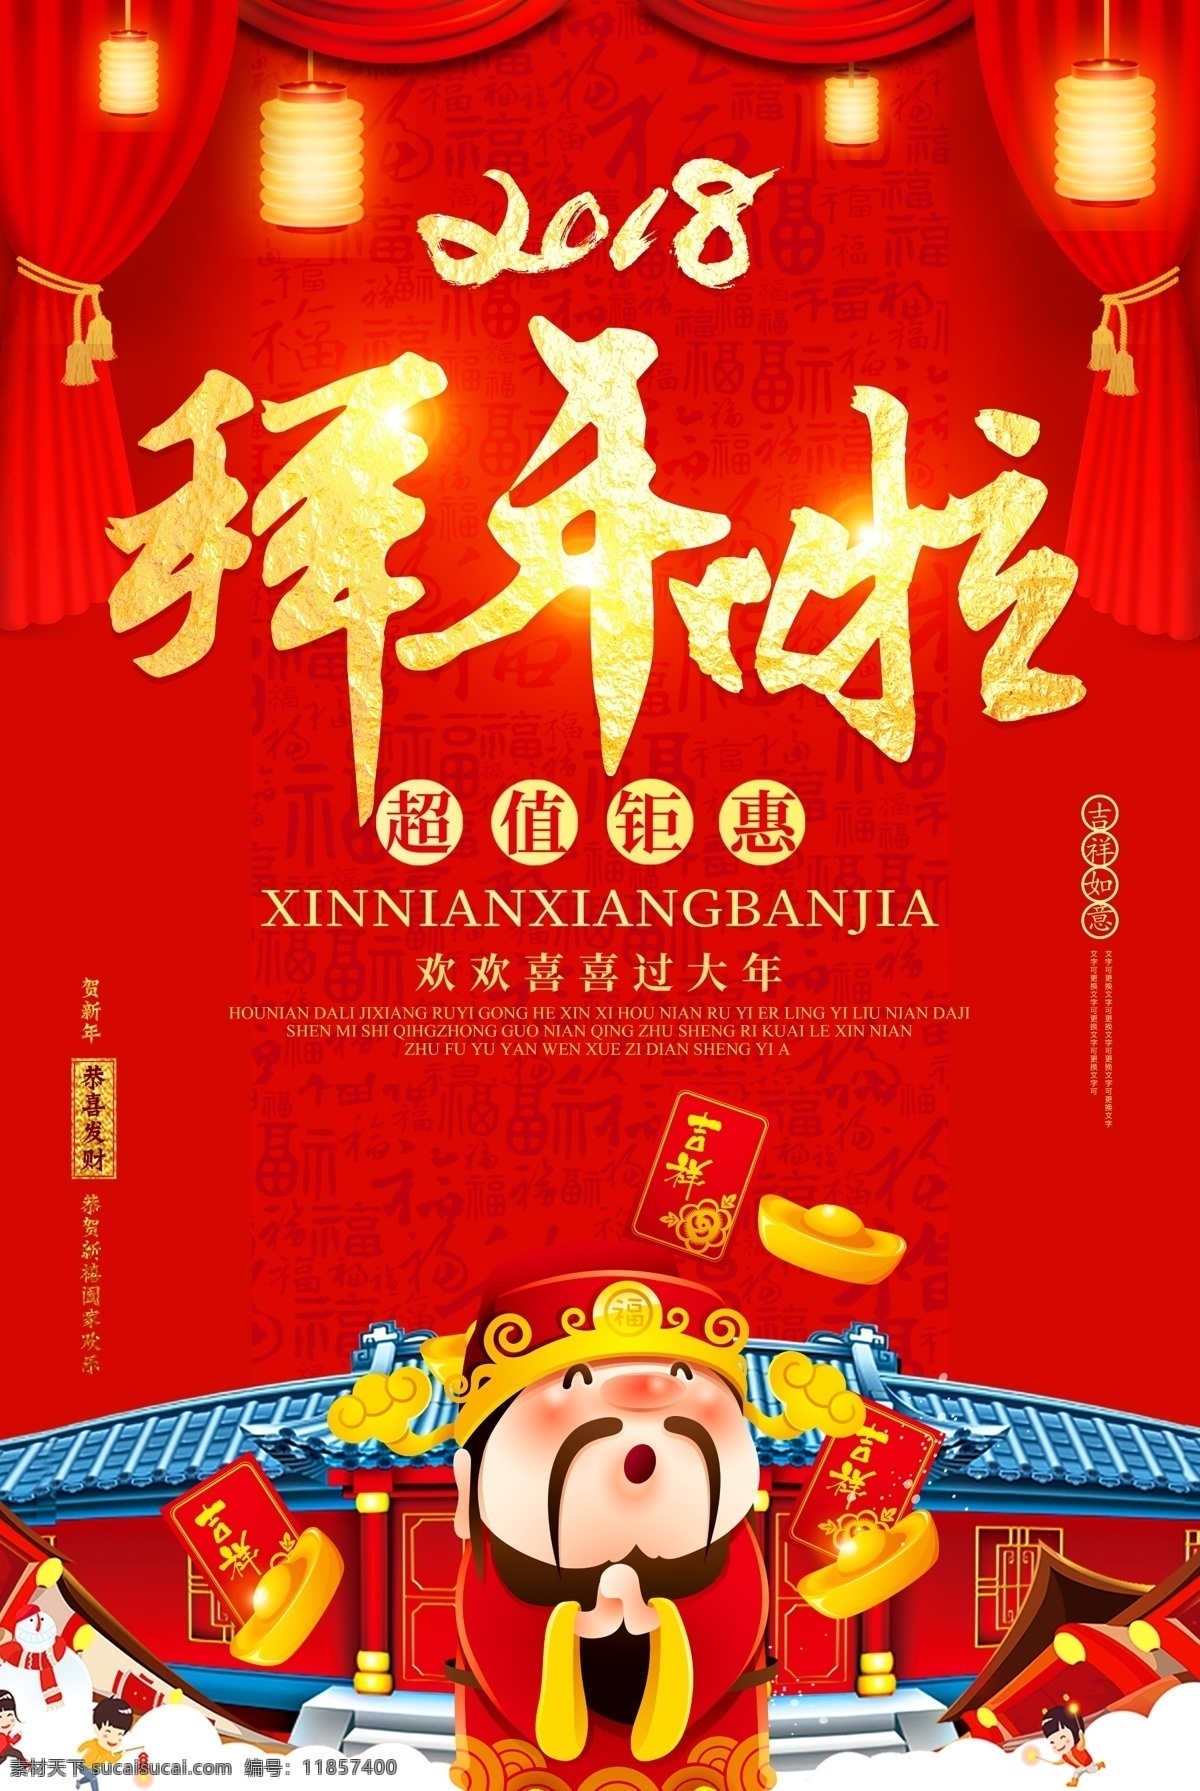 小年 节气画面 2019 猪年 新年快乐 春节画面 拜年画面